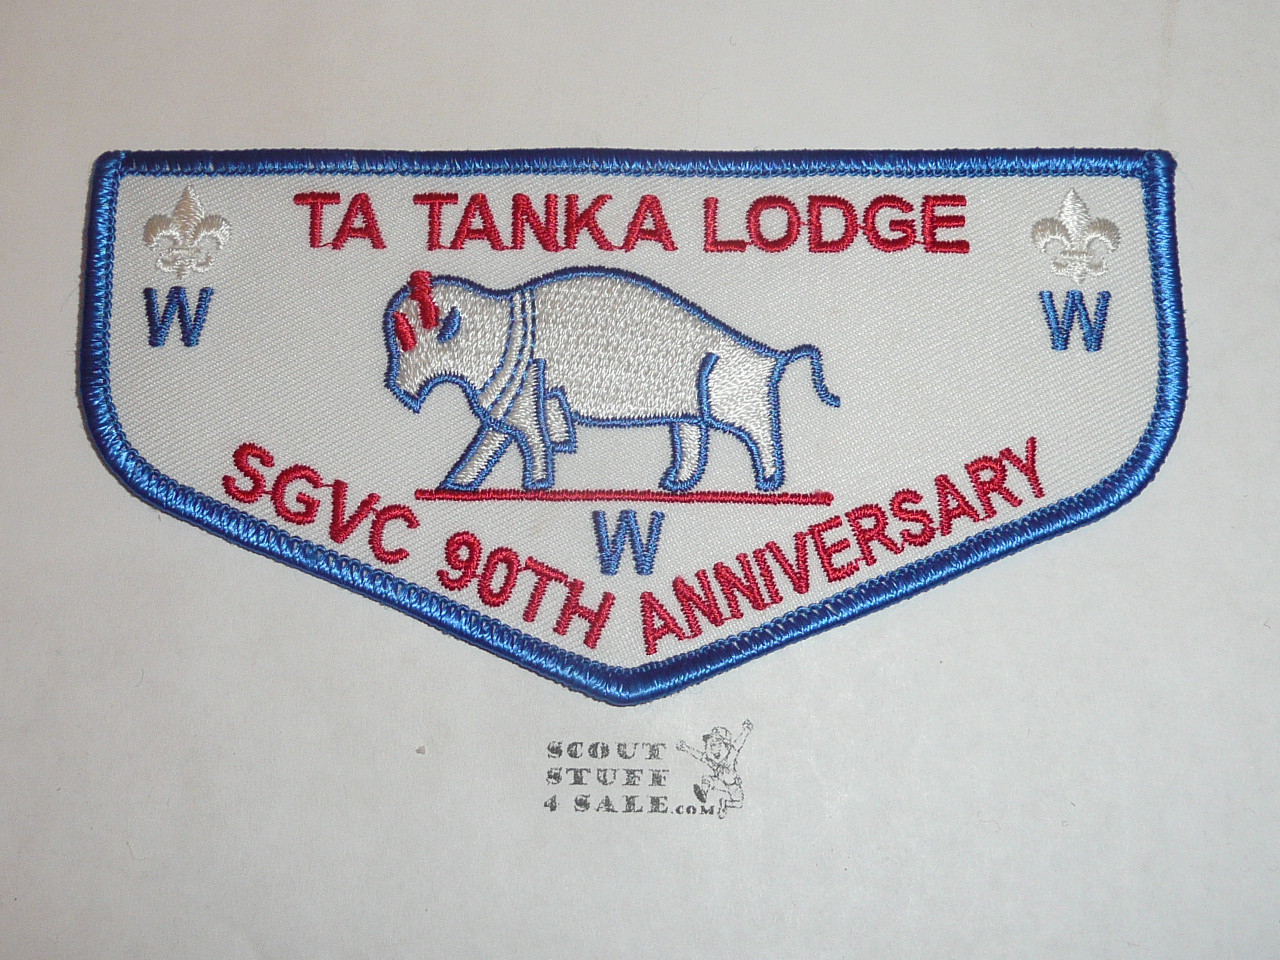 Order of the Arrow Lodge #488 Ta Tanka f3 SGVC 90th anniversary Flap Patch